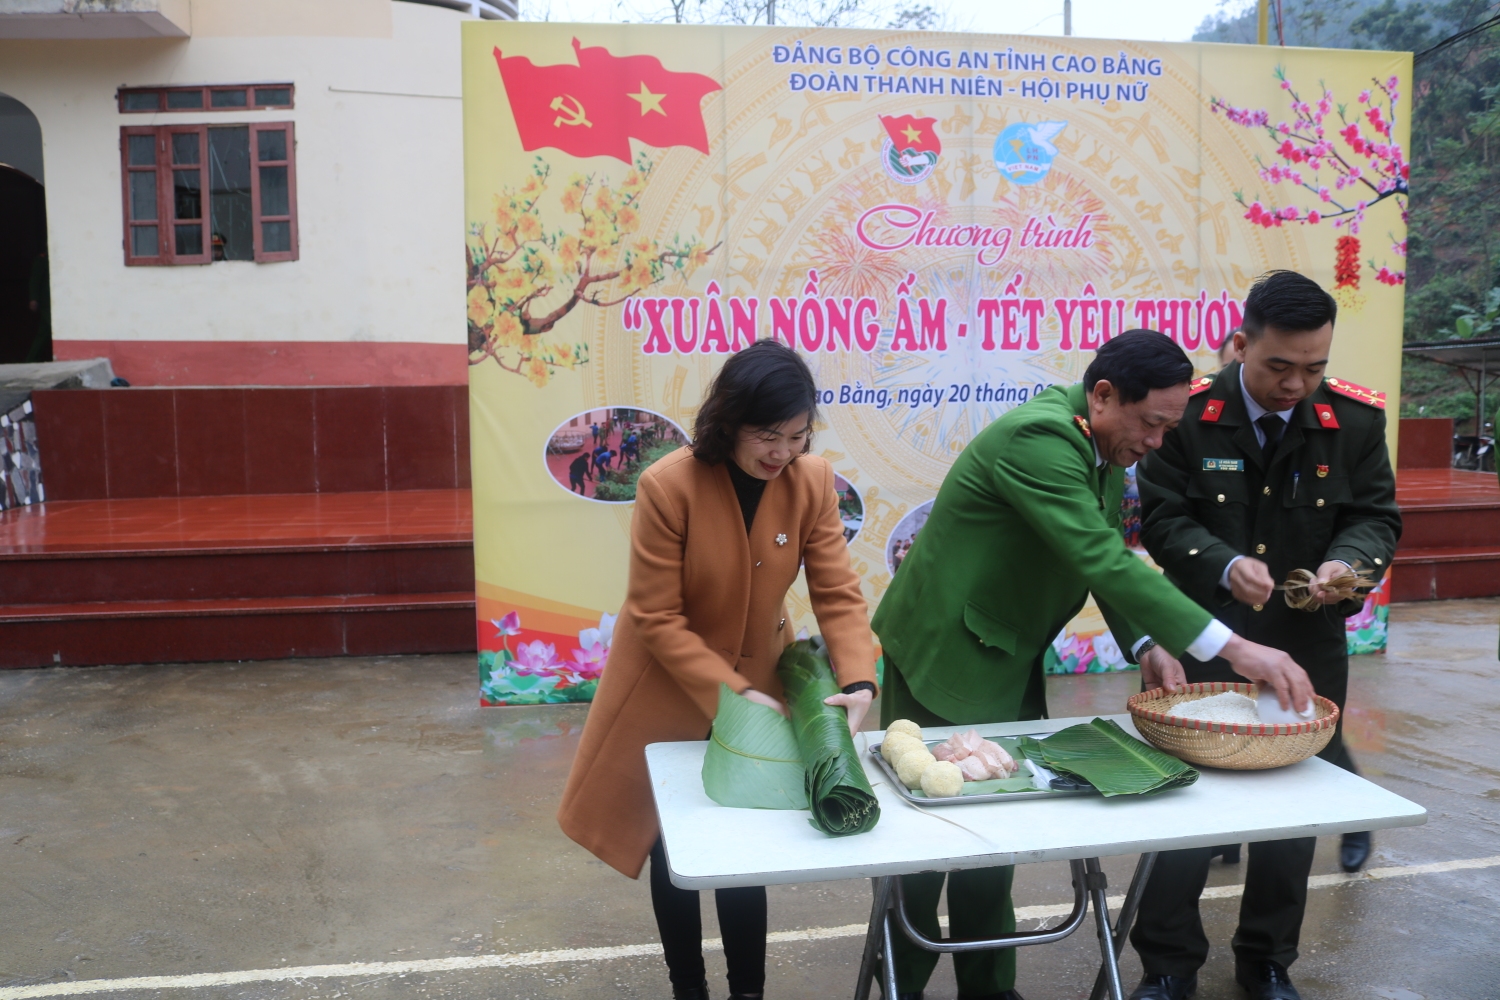 Đại tá Mai Xuân Tư - Phó Giám đốc Công an tỉnth tham gia gói bánh chưng tại chương trình “Xuân nồng ấm - Tết yêu thương”.